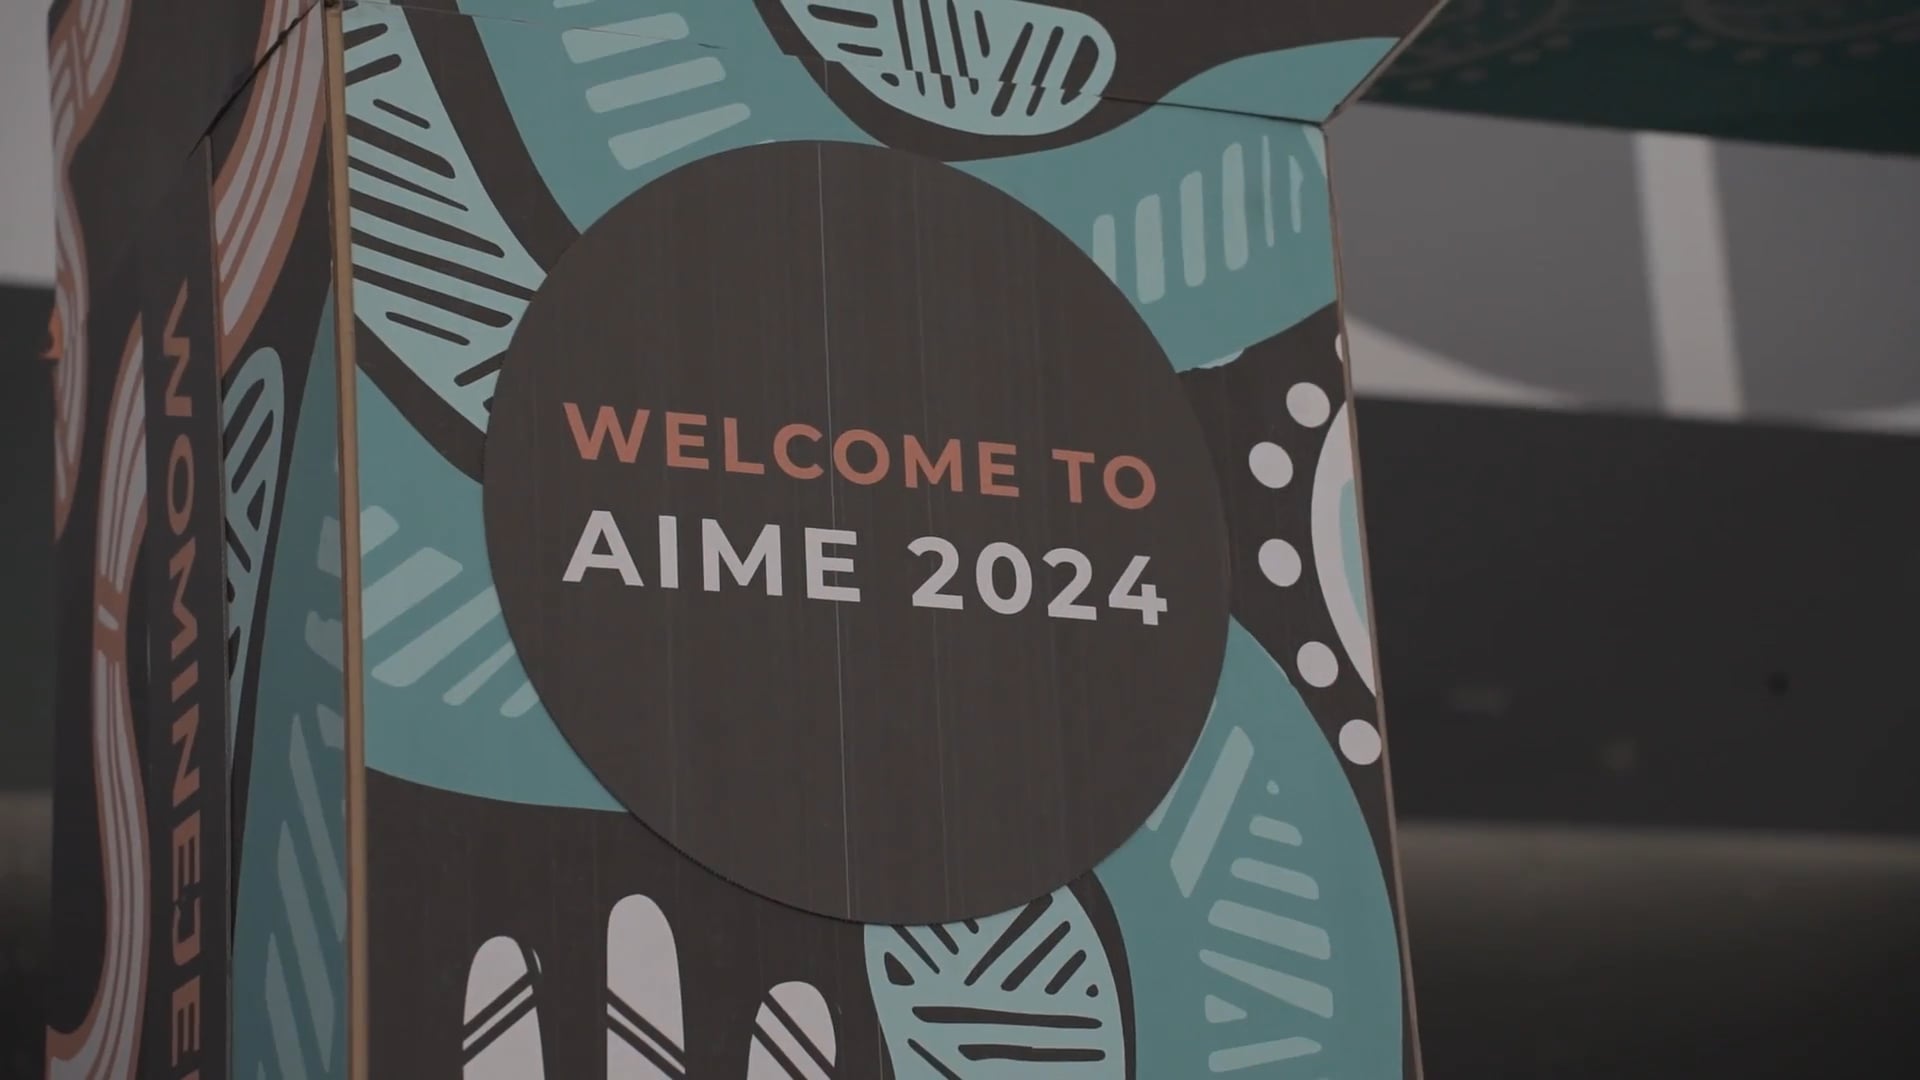 AIME 2024